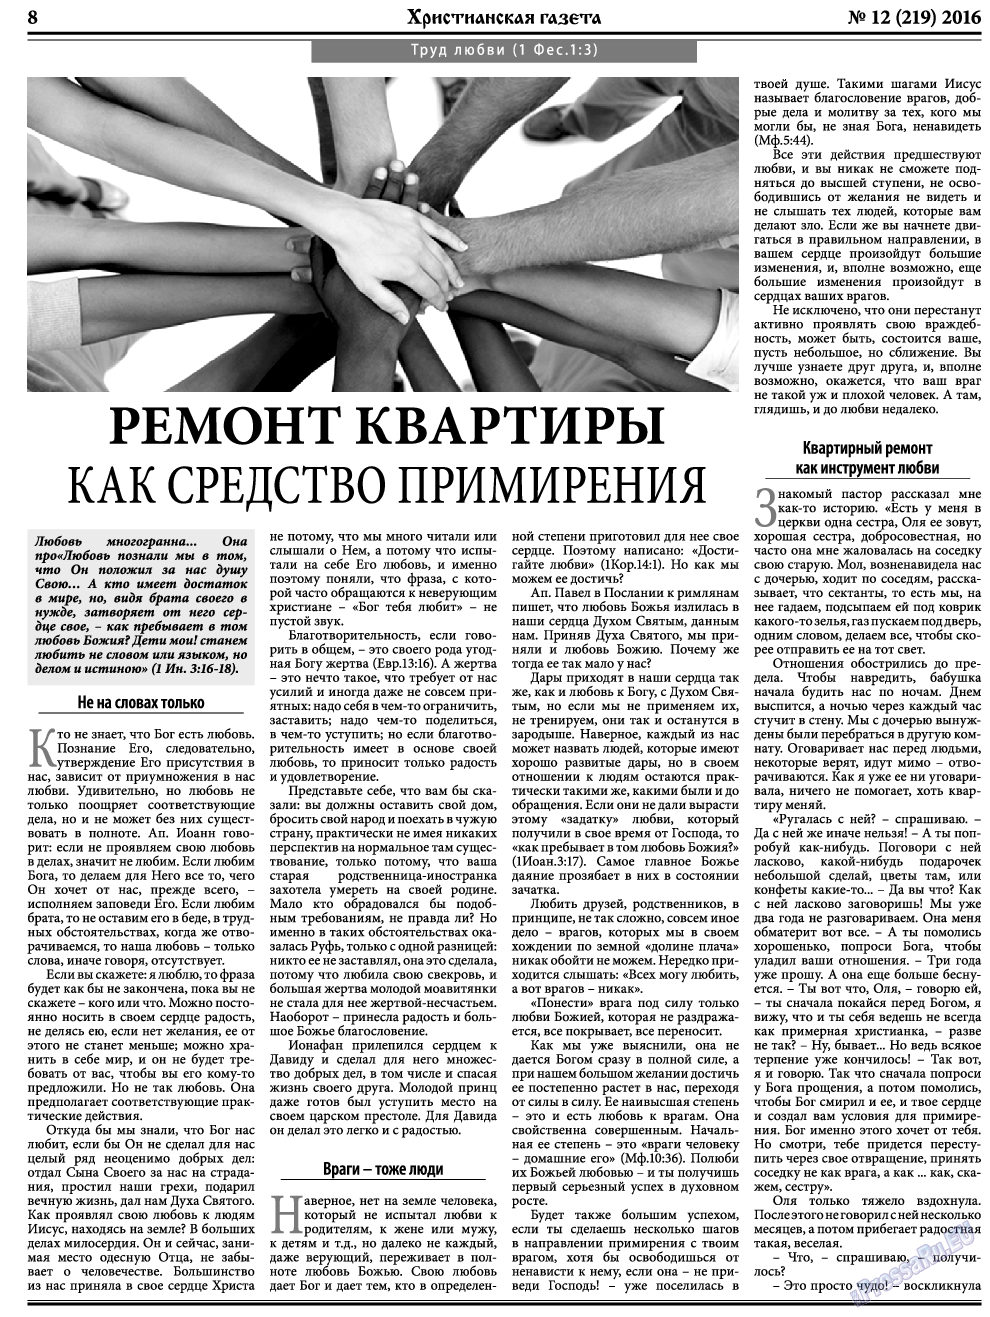 Христианская газета, газета. 2016 №12 стр.8